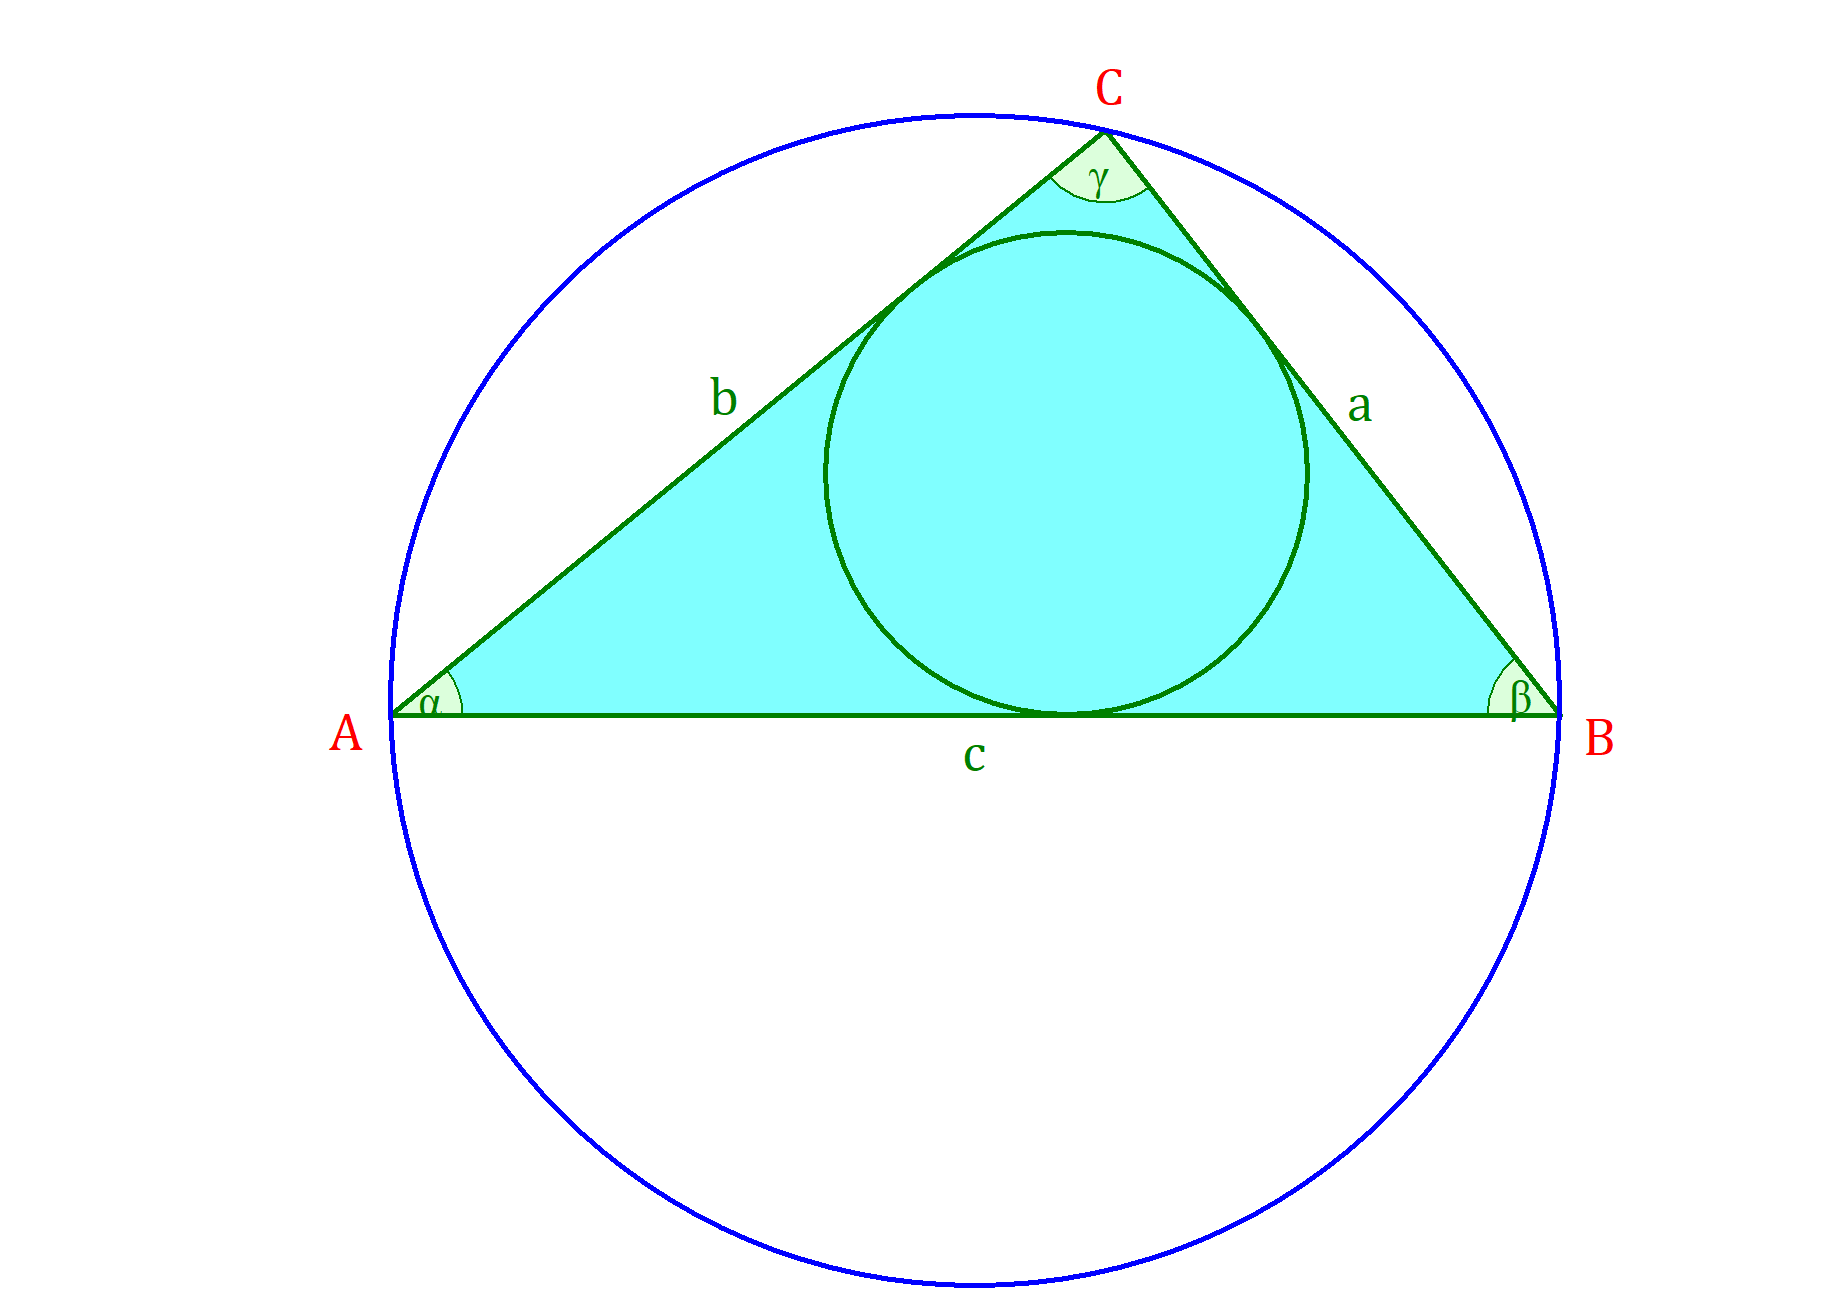 inkreis dreieck, umkreis dreieck, inkreis dreieck konstruieren, innenkreis dreieck, umkreis konstruieren, inkreis konstruieren, inkreis, inkreis eines dreieck, umkreismittelpunkt dreieck, umkreis eines dreiecks, umkreis dreieck konstruieren, umkreisradius dreieck, mittelsenkrechte umkreis, innenkreis dreieck konstruieren
